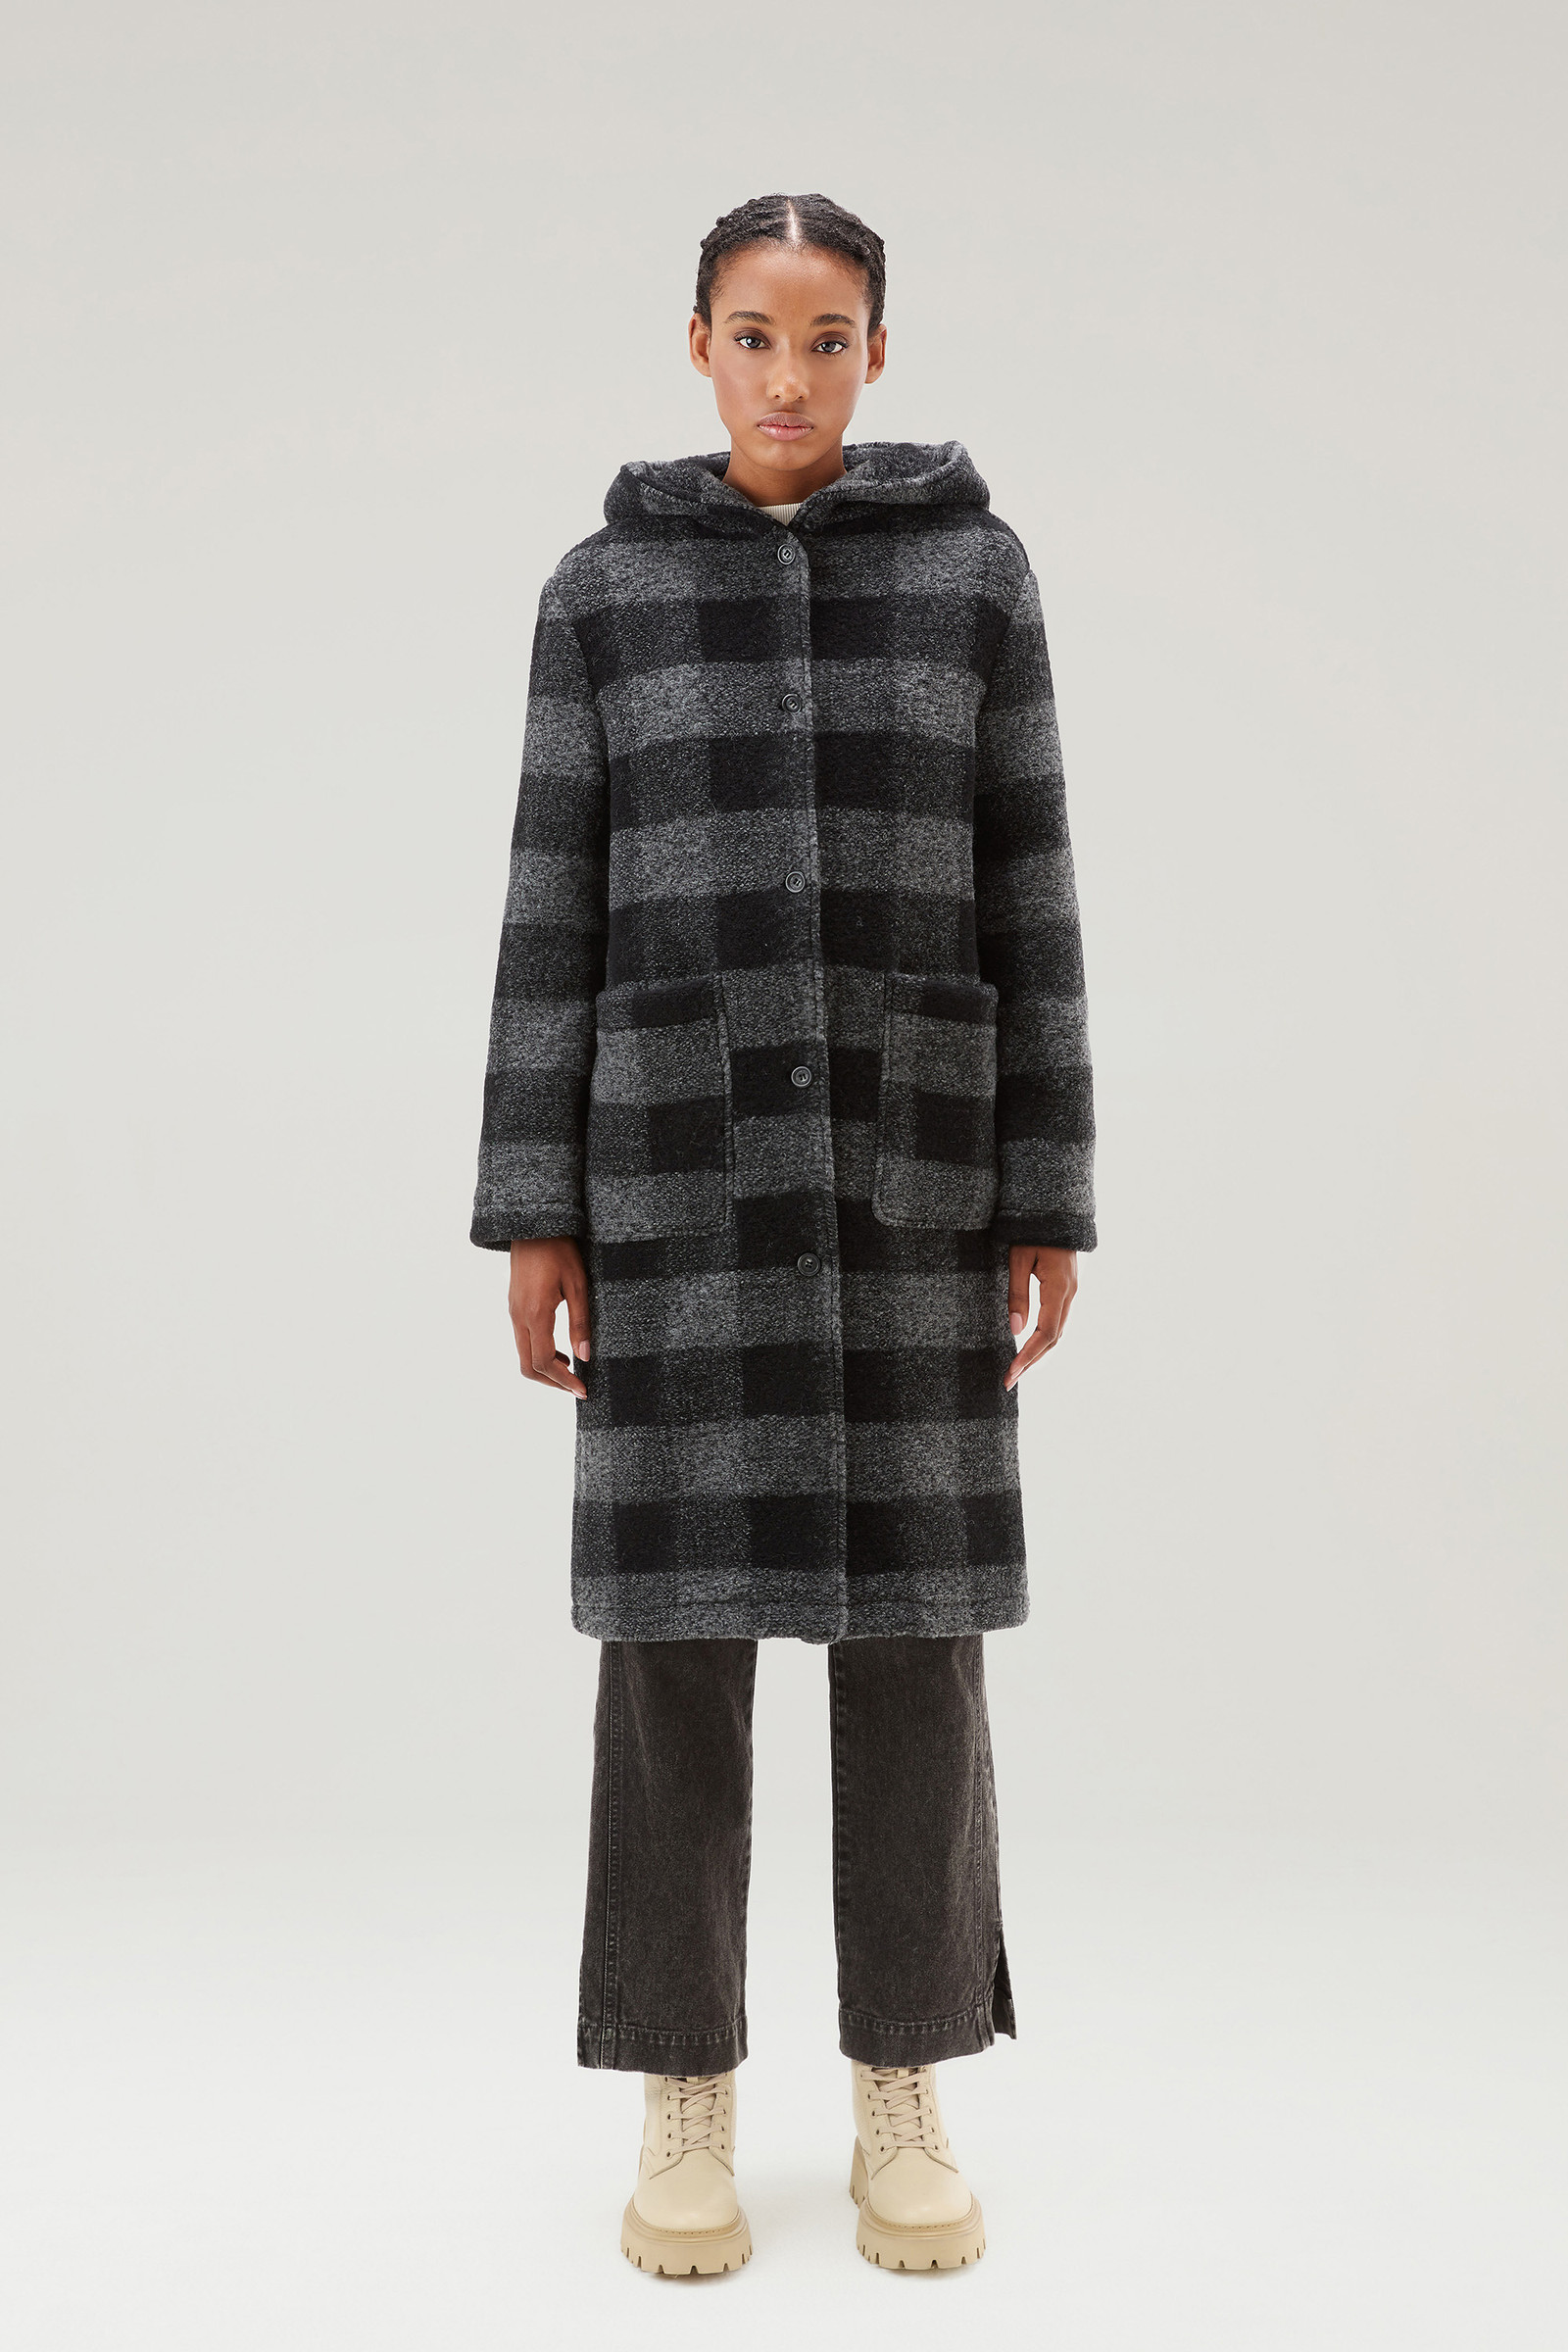 Cappotto donna con cappuccio in misto lana riciclata con motivo